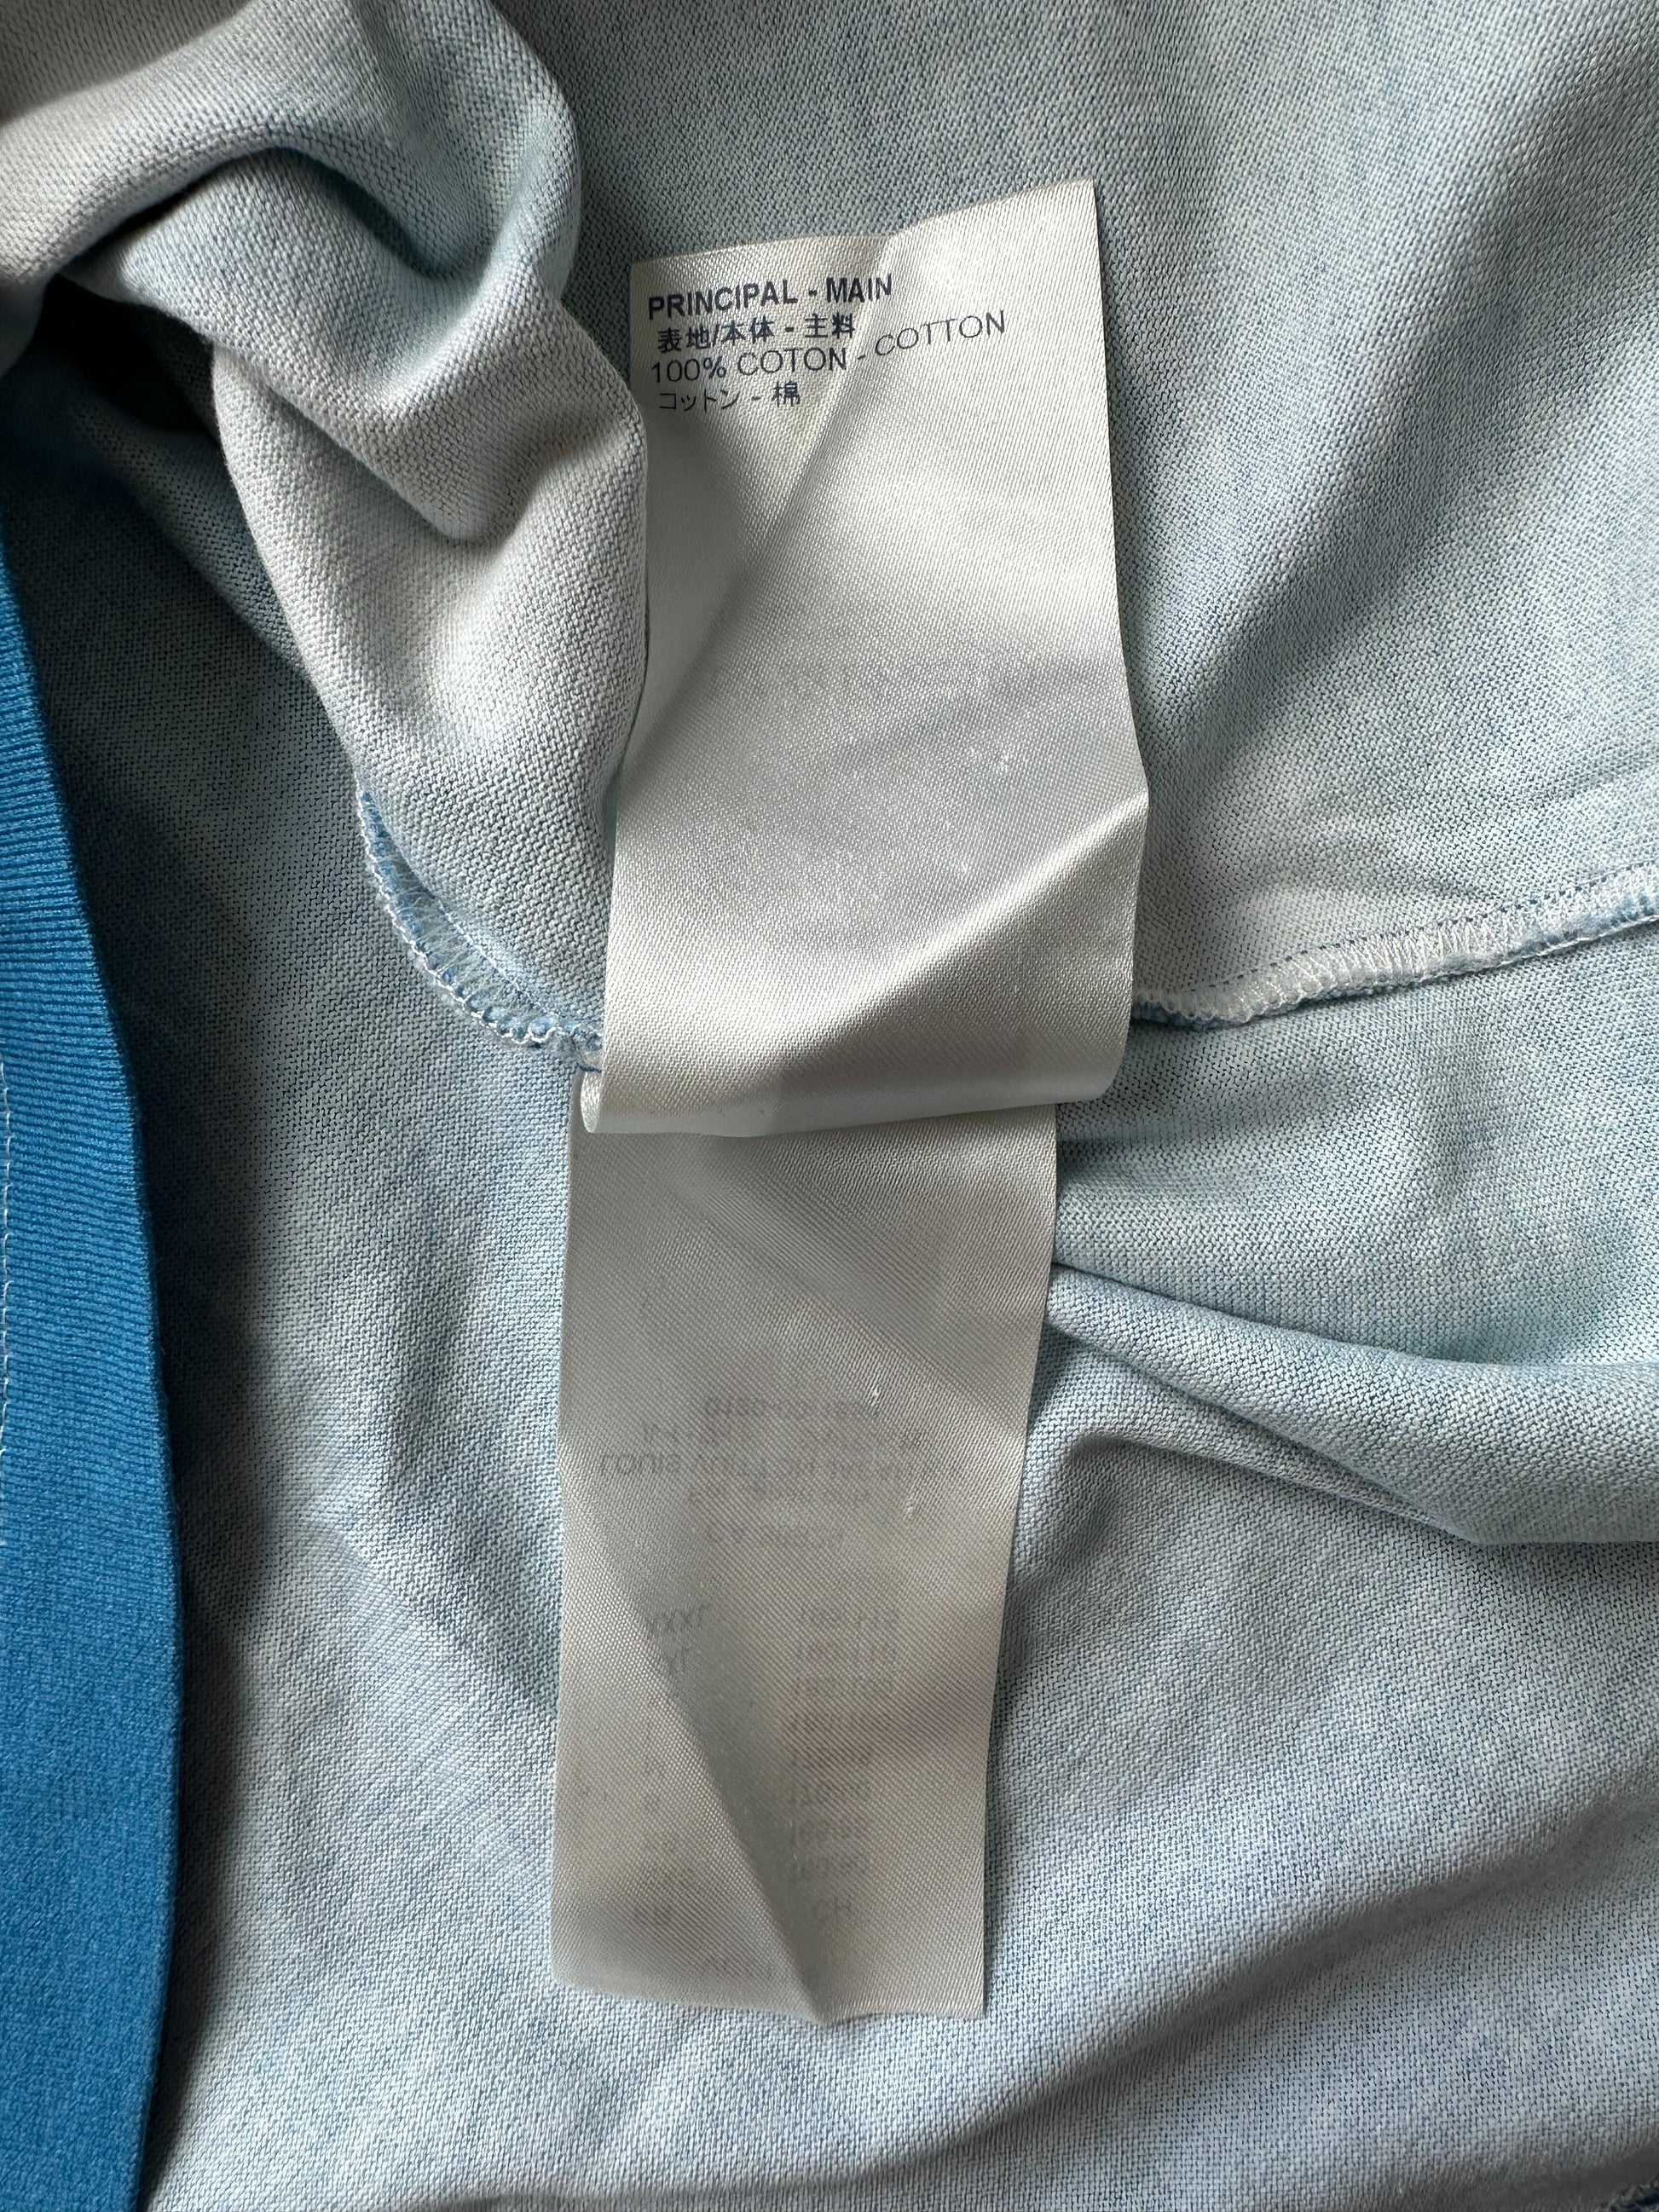 Louis Vuitton Blue & White Cloud Logo T-Shirt – Savonches